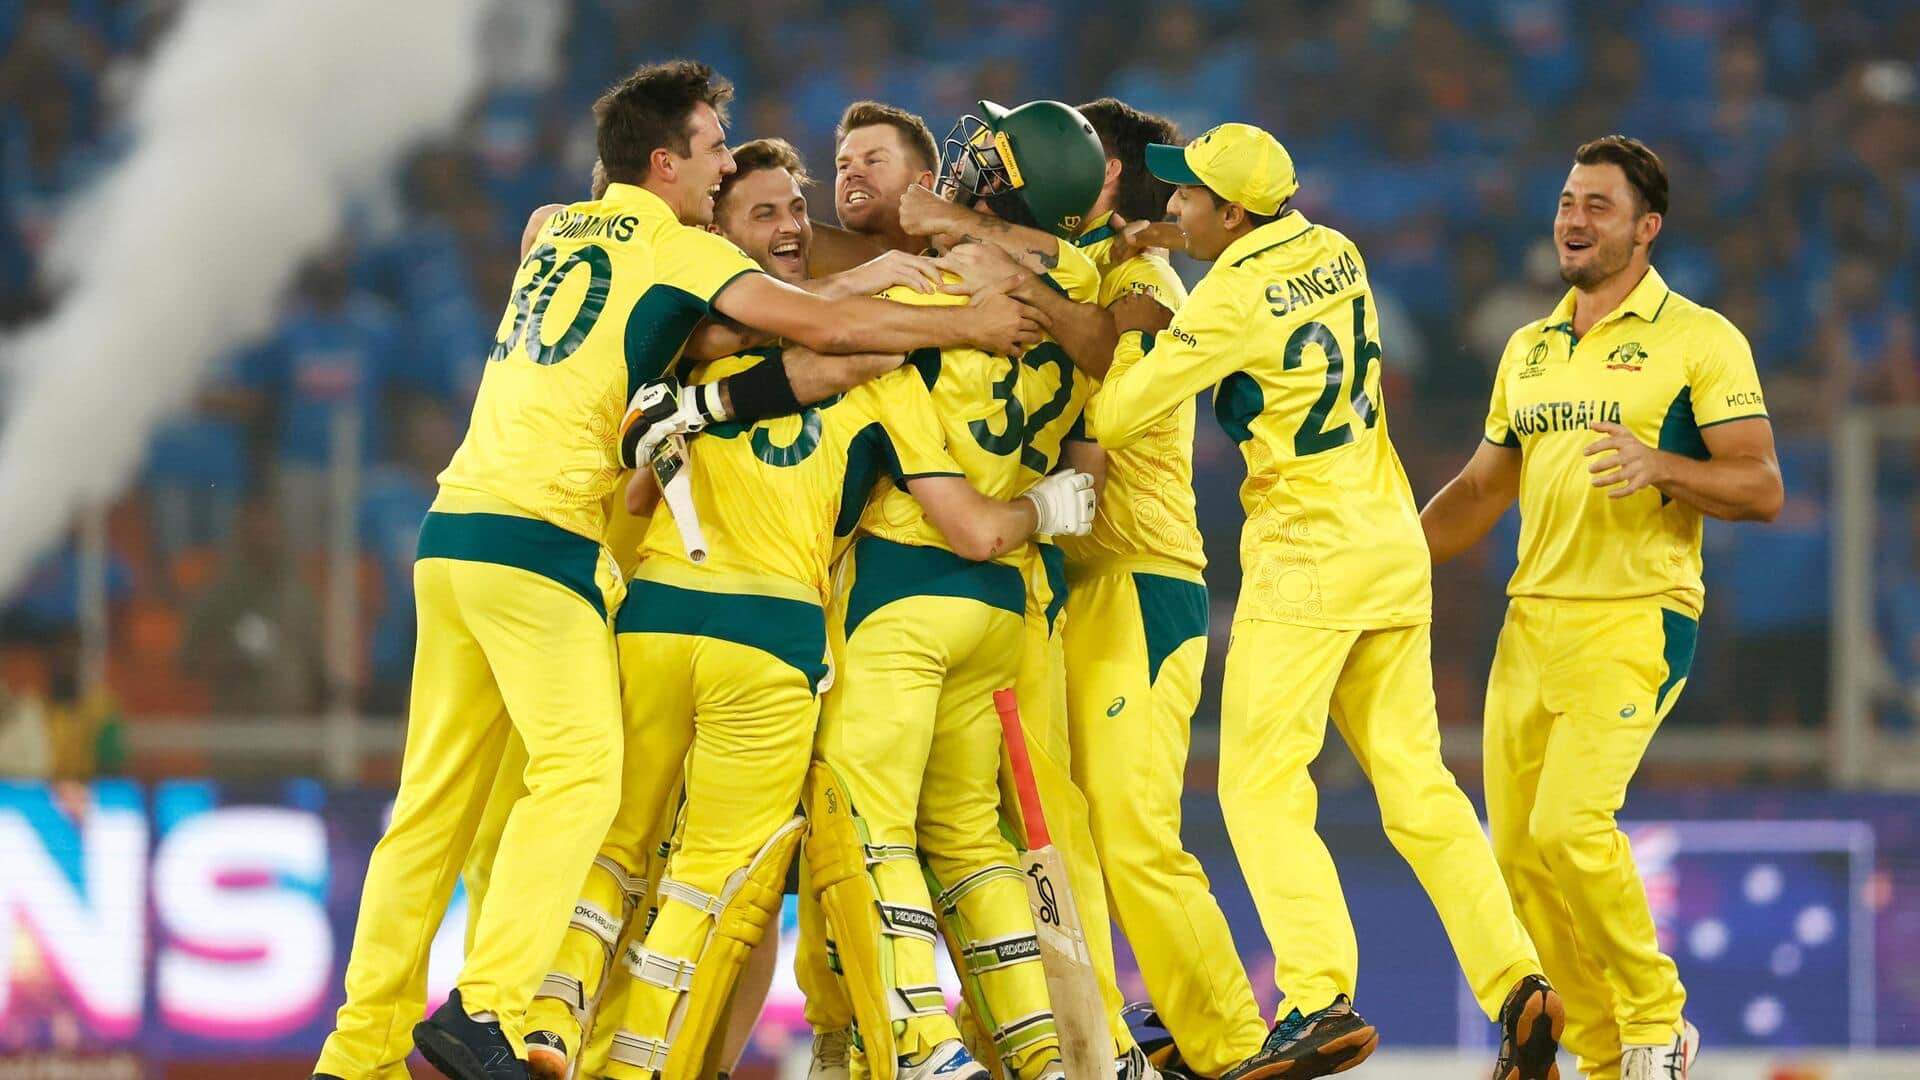 ऑस्ट्रेलिया क्रिकेट टीम ने छठी बार जीता विश्व कप का खिताब, आंकड़ों में जानिए प्रदर्शन